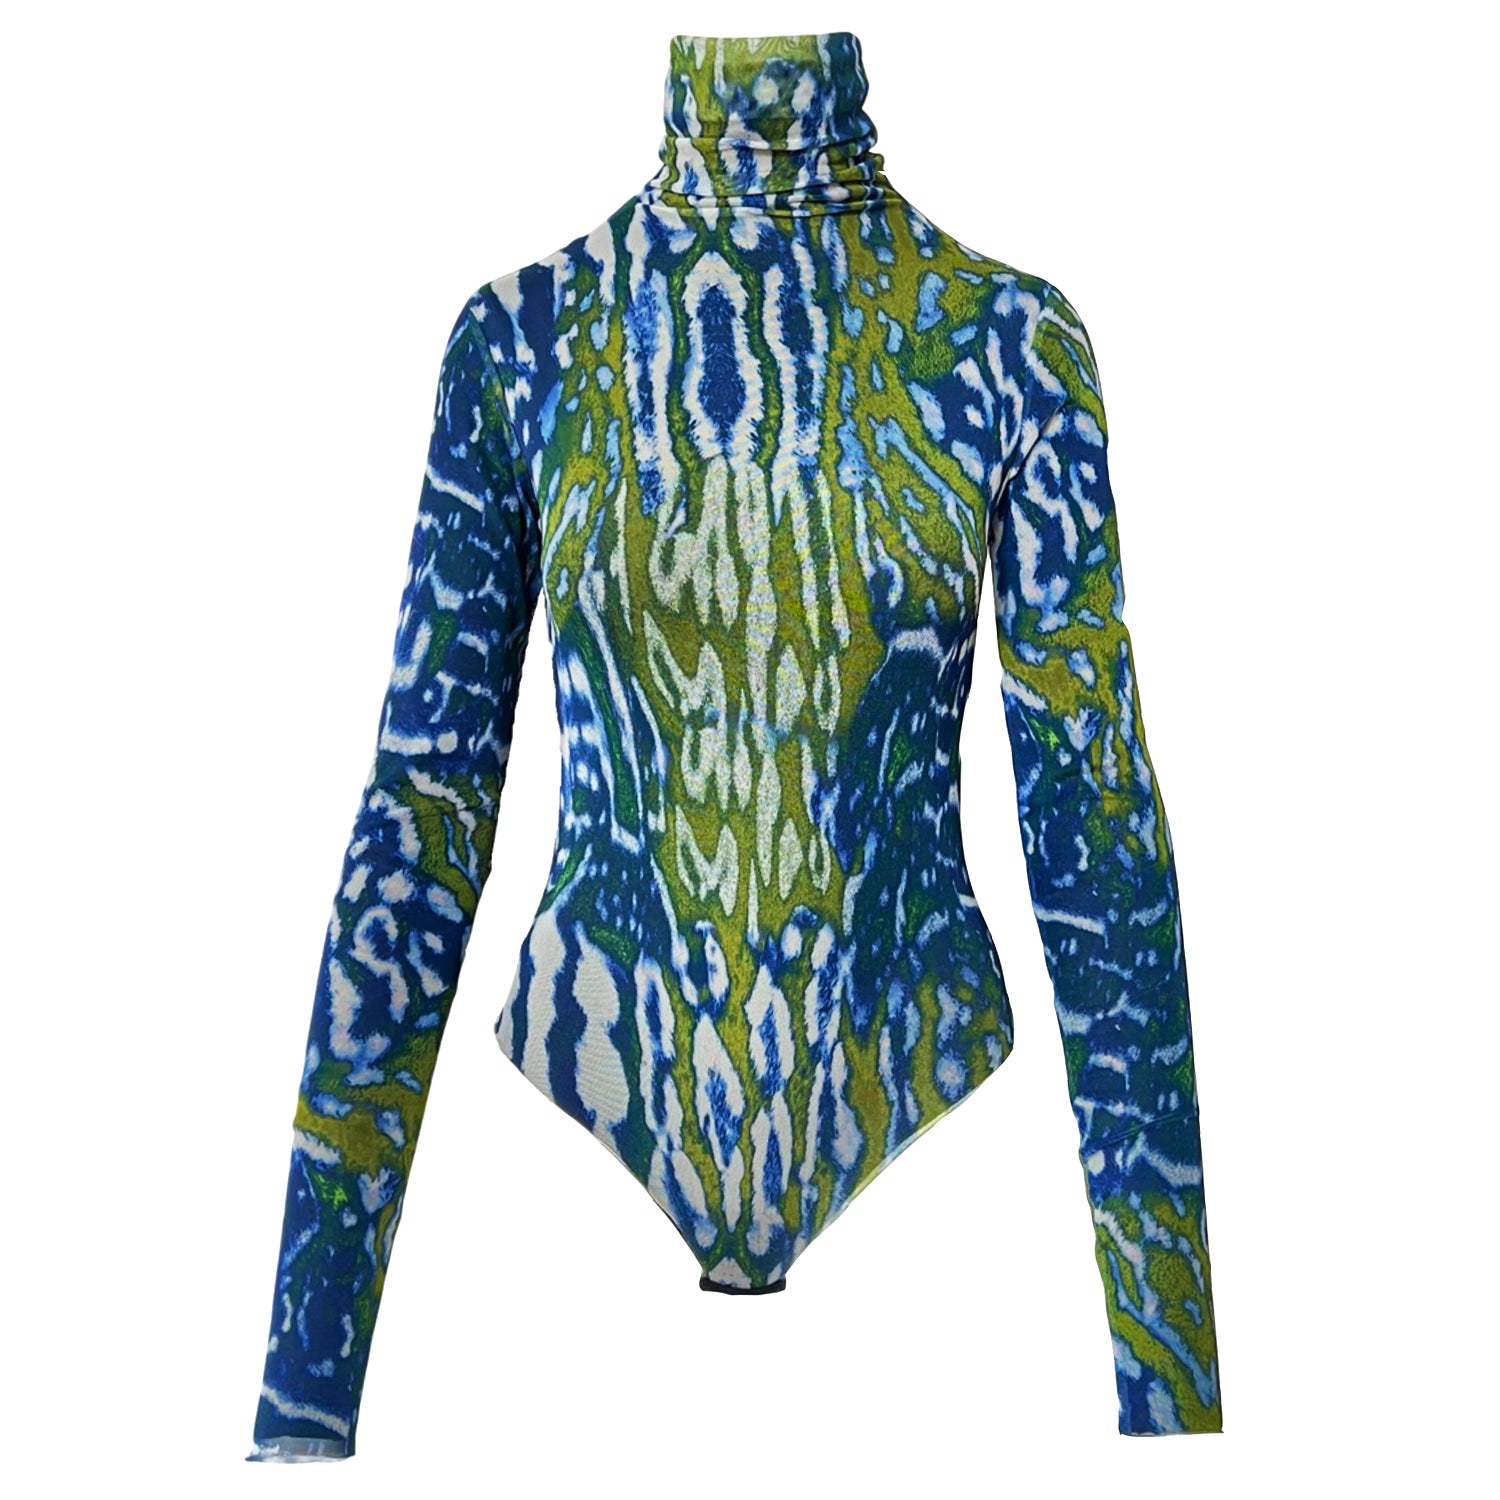 Printed Mesh Bodysuit in Blue & Green